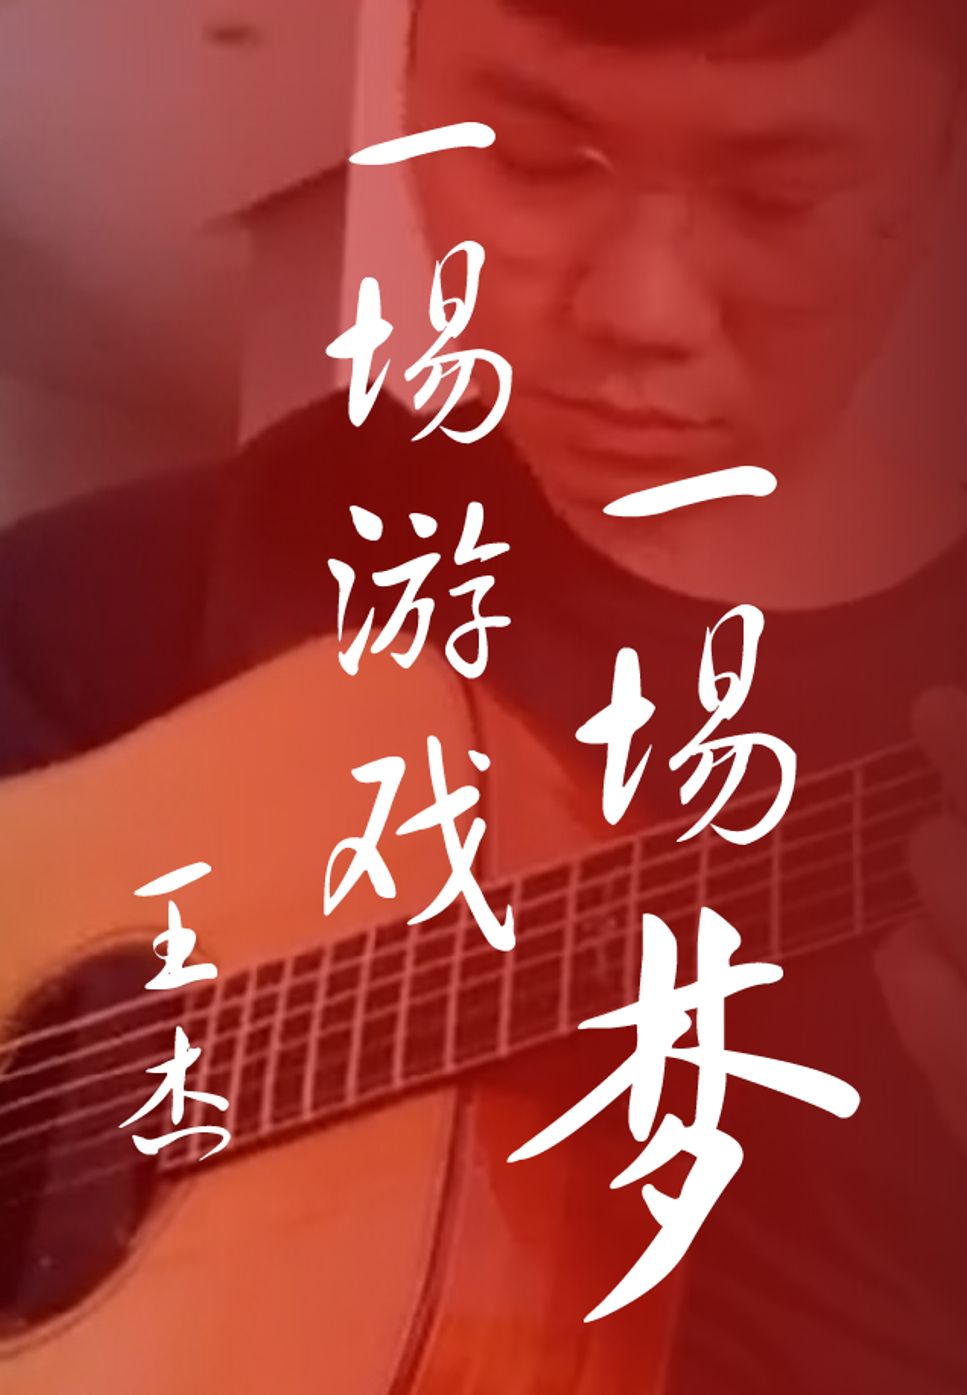 Wang Jie - Yi Chang You Xi Yi Chang Meng fingerstyle (tuning: DADF#AD) by HowMing